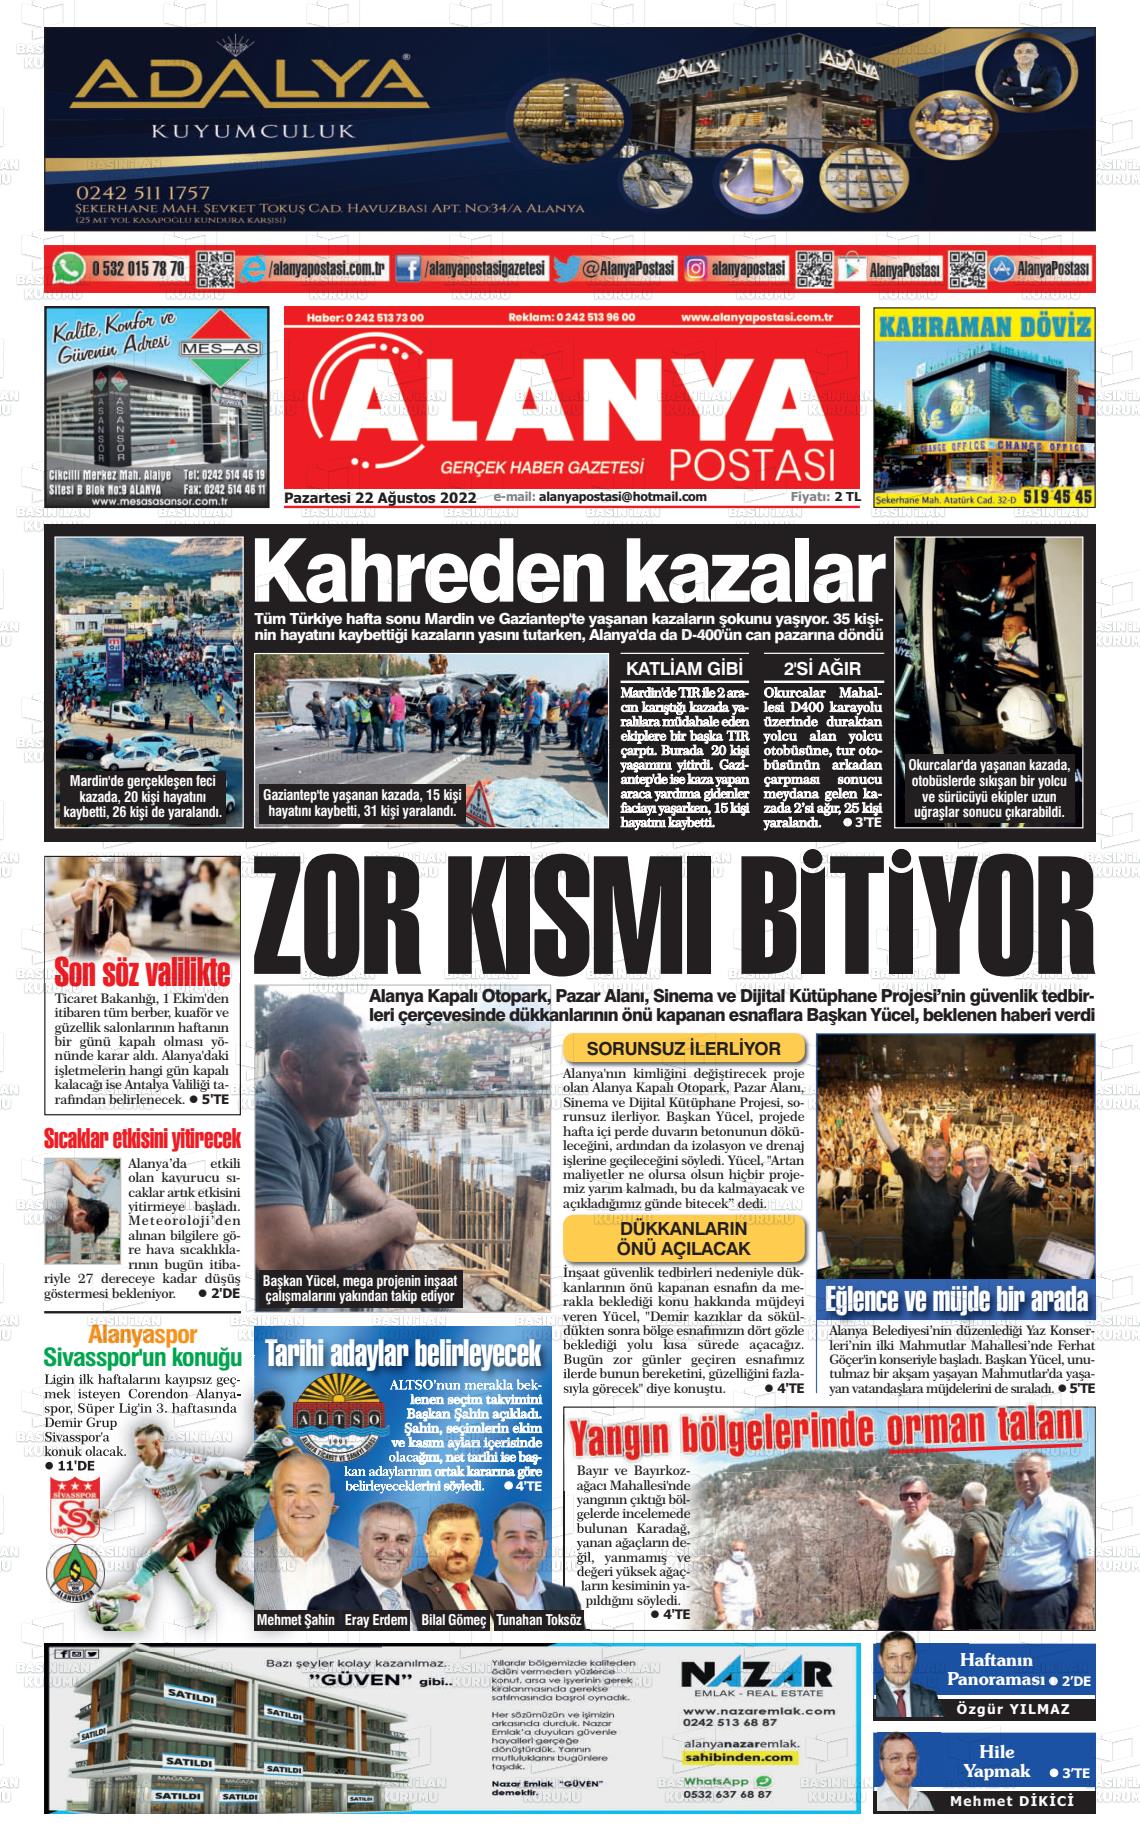 22 Ağustos 2022 Alanya Postası Gazete Manşeti